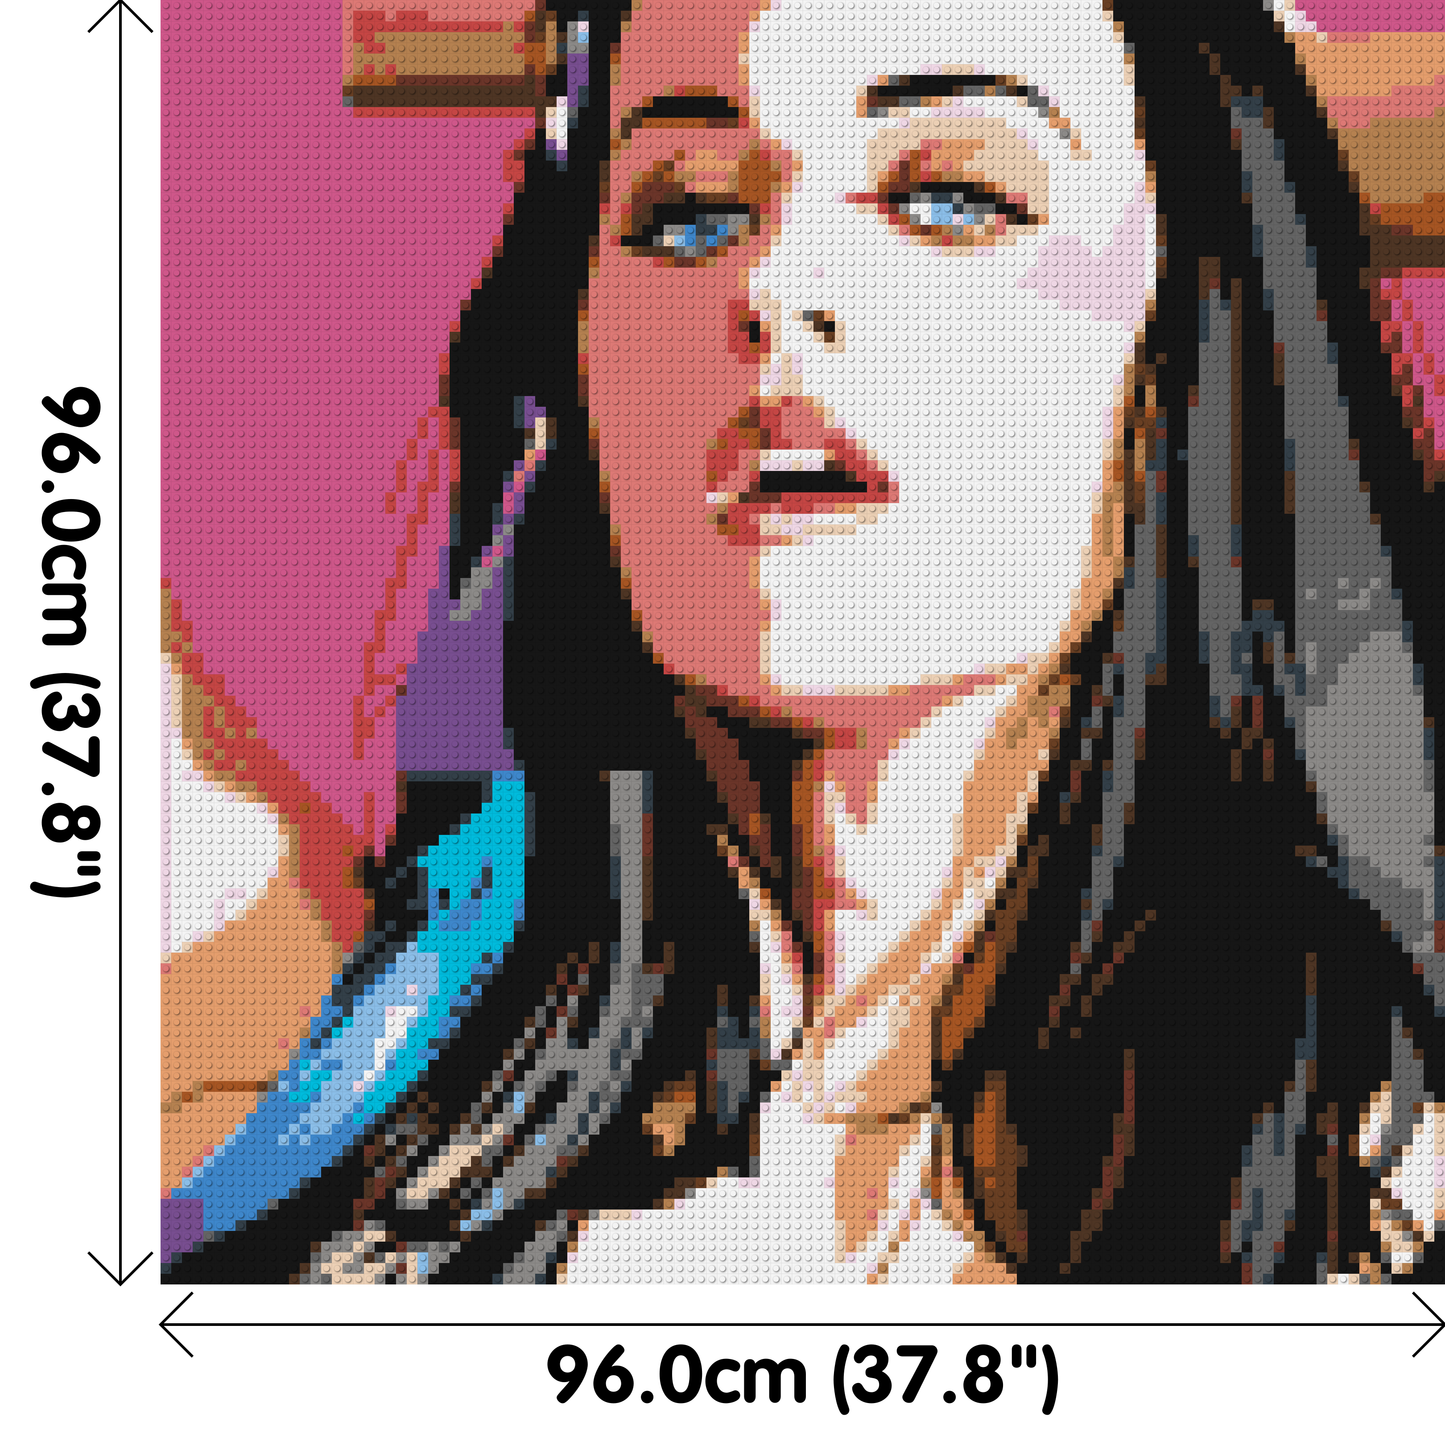 Katy Perry #2 - Brick Art Mosaic Kit